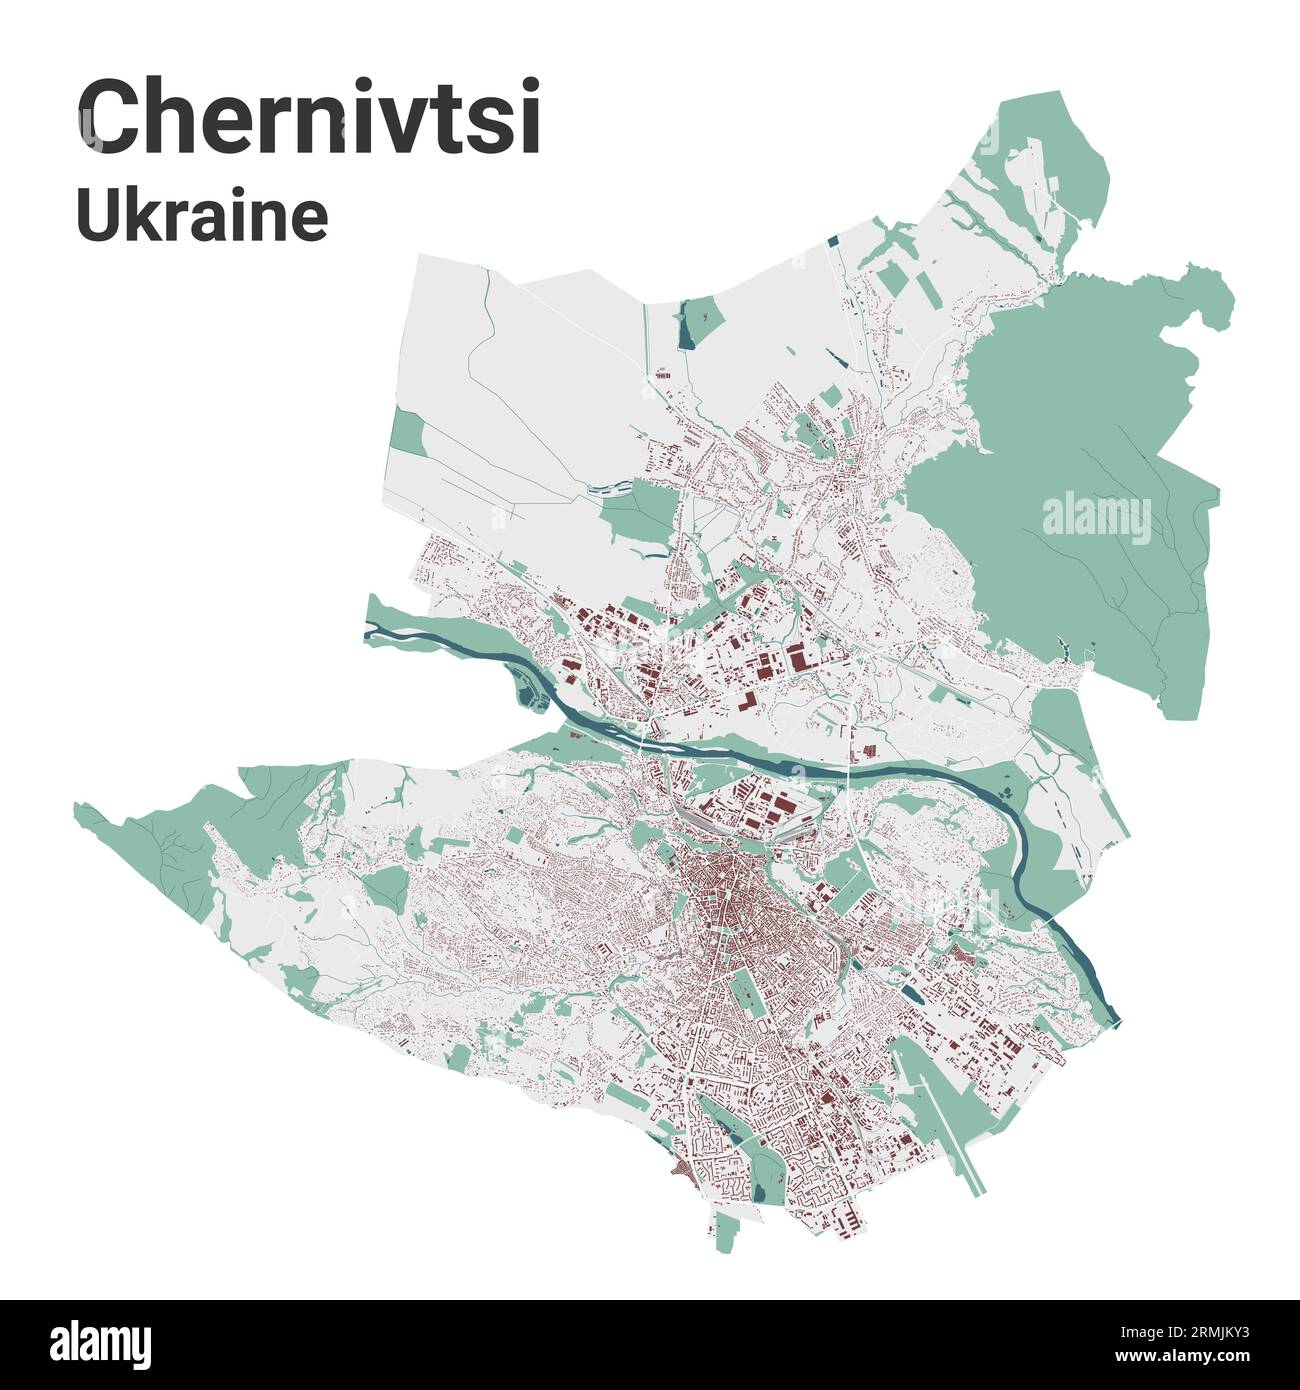 Mappa di Chernivtsi, città in Ucraina. Mappa dell'area amministrativa municipale con edifici, fiumi e strade, parchi e ferrovie. Illustrazione vettoriale. Illustrazione Vettoriale